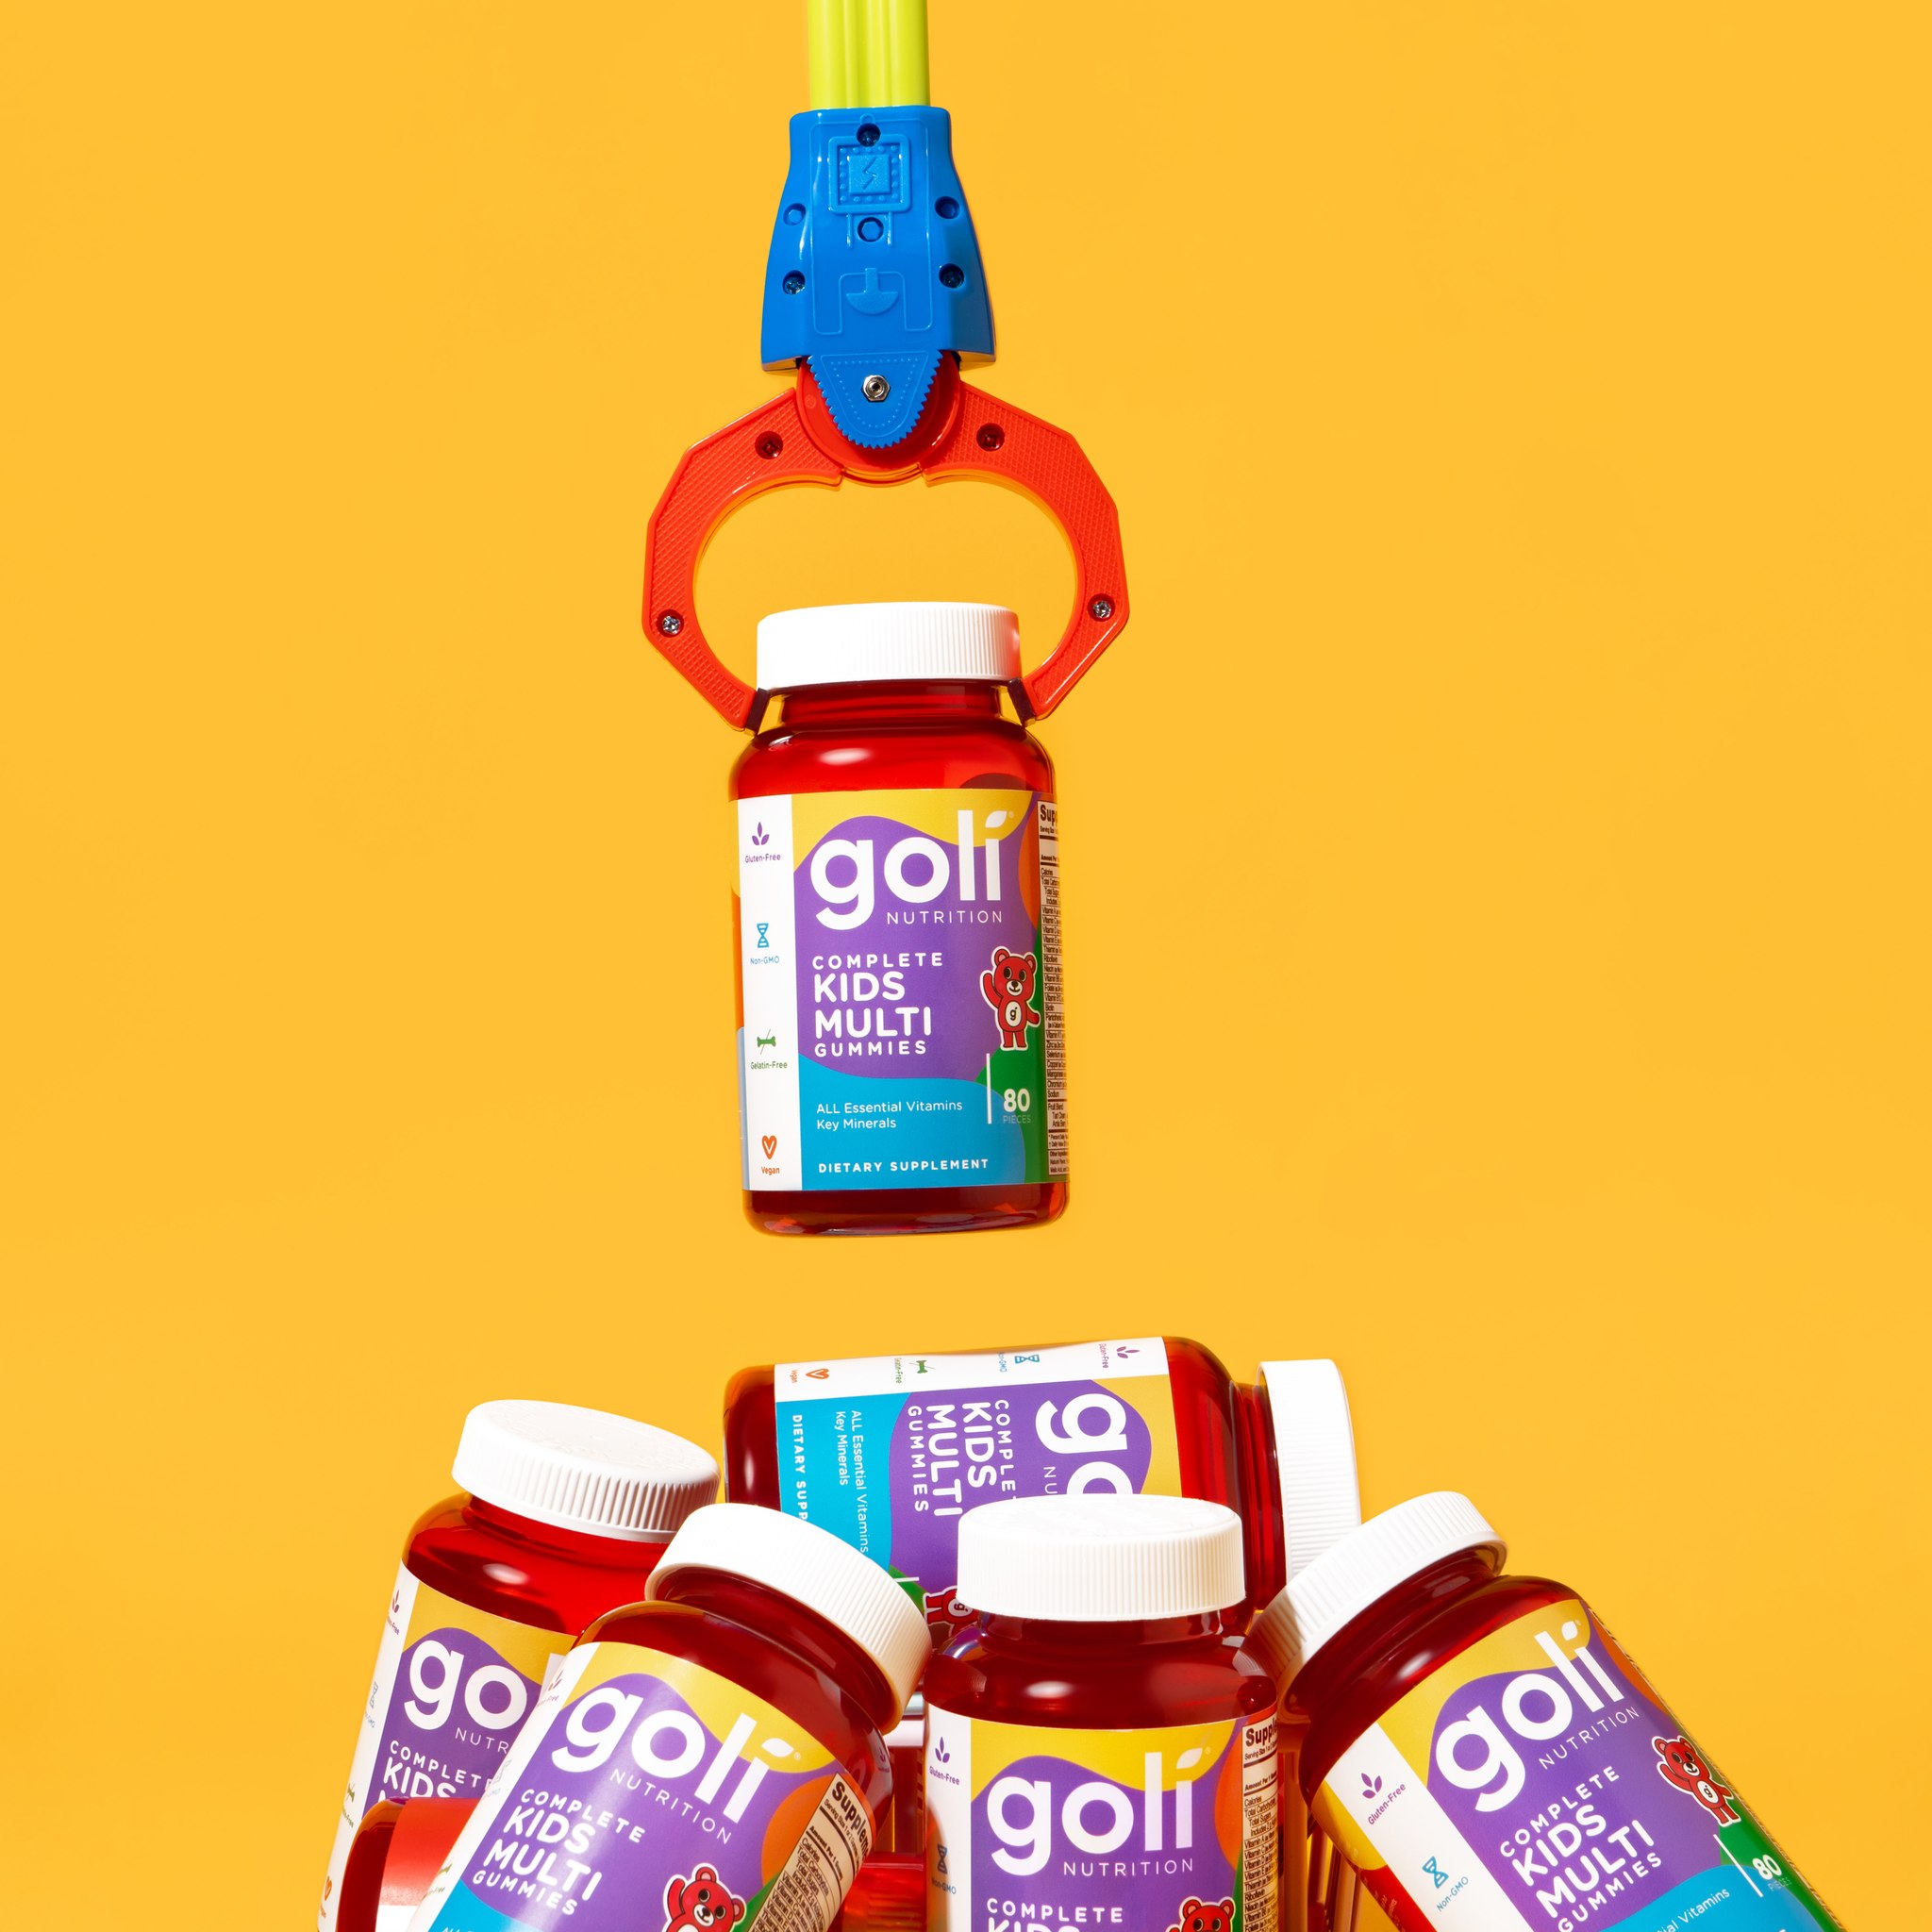 Kẹo Dẻo Tổng Hợp Dành Cho Trẻ Em Goli Complete Kids Multi Gummies 80 viên